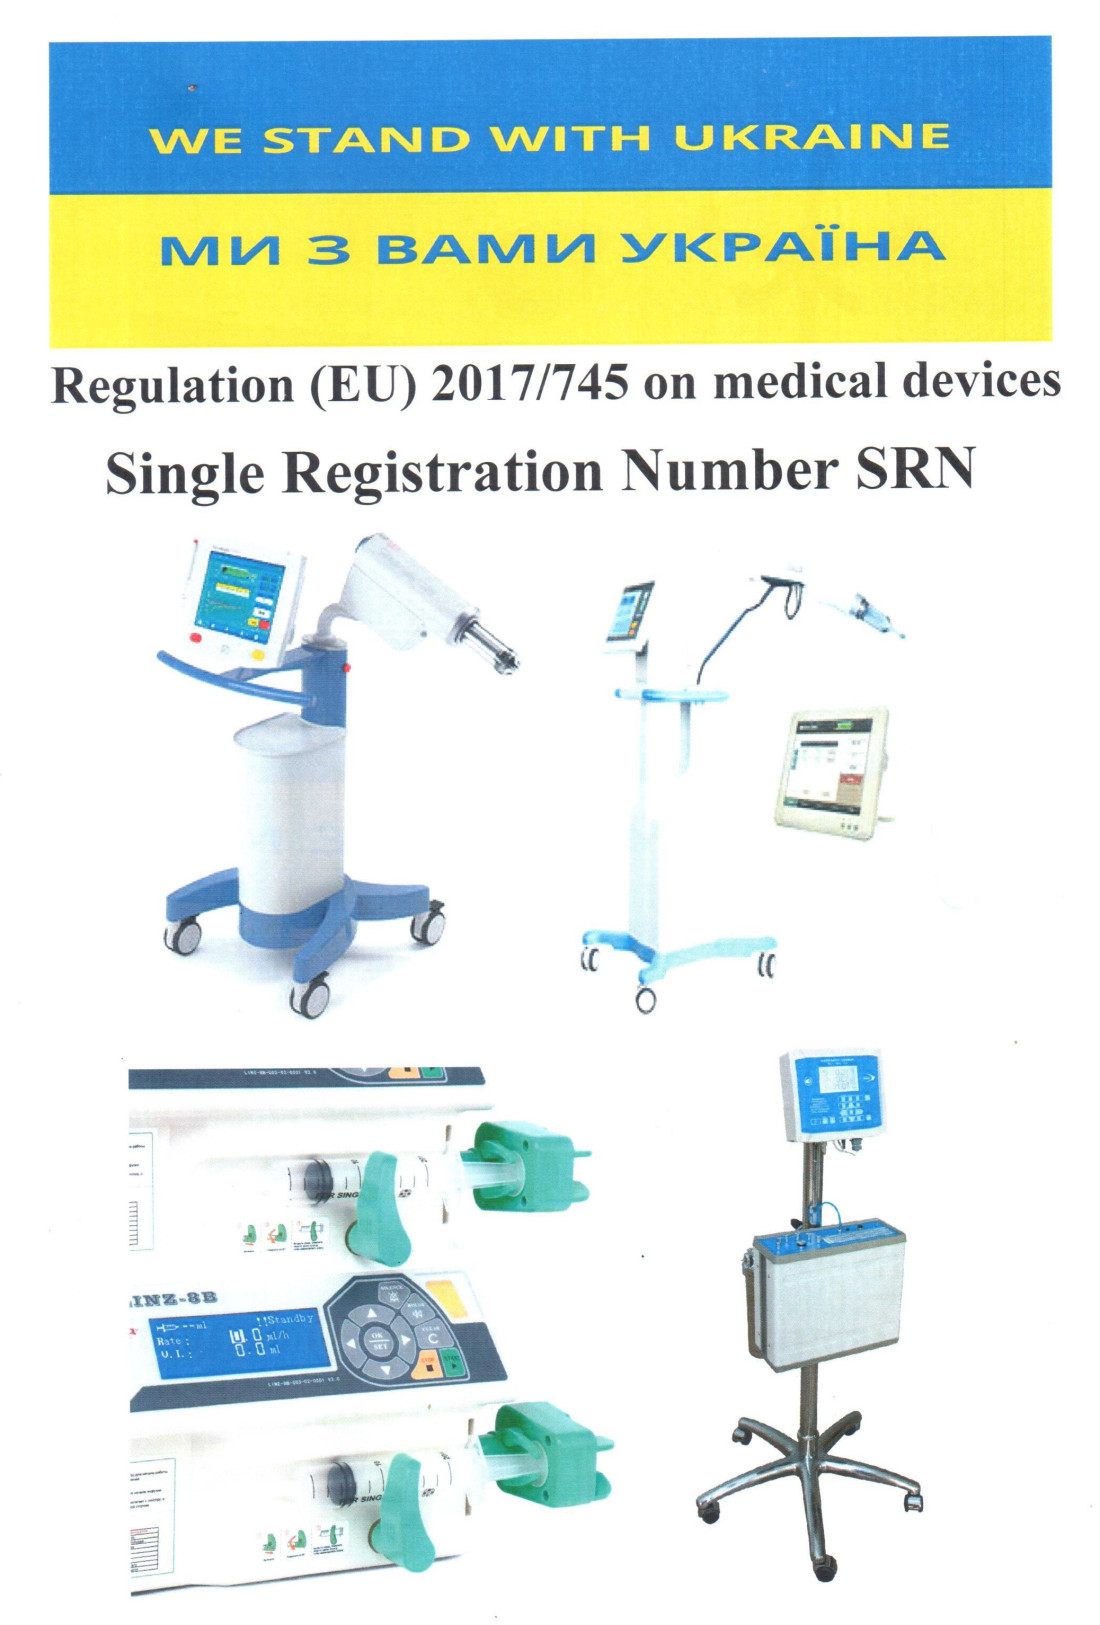 Єдиний реєстраційний номер (SRN) - це унікальний номер, присвоєний вашій компанії європейським компетентним органом. SRN видається тільки компаніям ("Економічним операторам"), які повинні бути зареєстровані в EUDAMED, Європейській базі даних про медичні вироби.